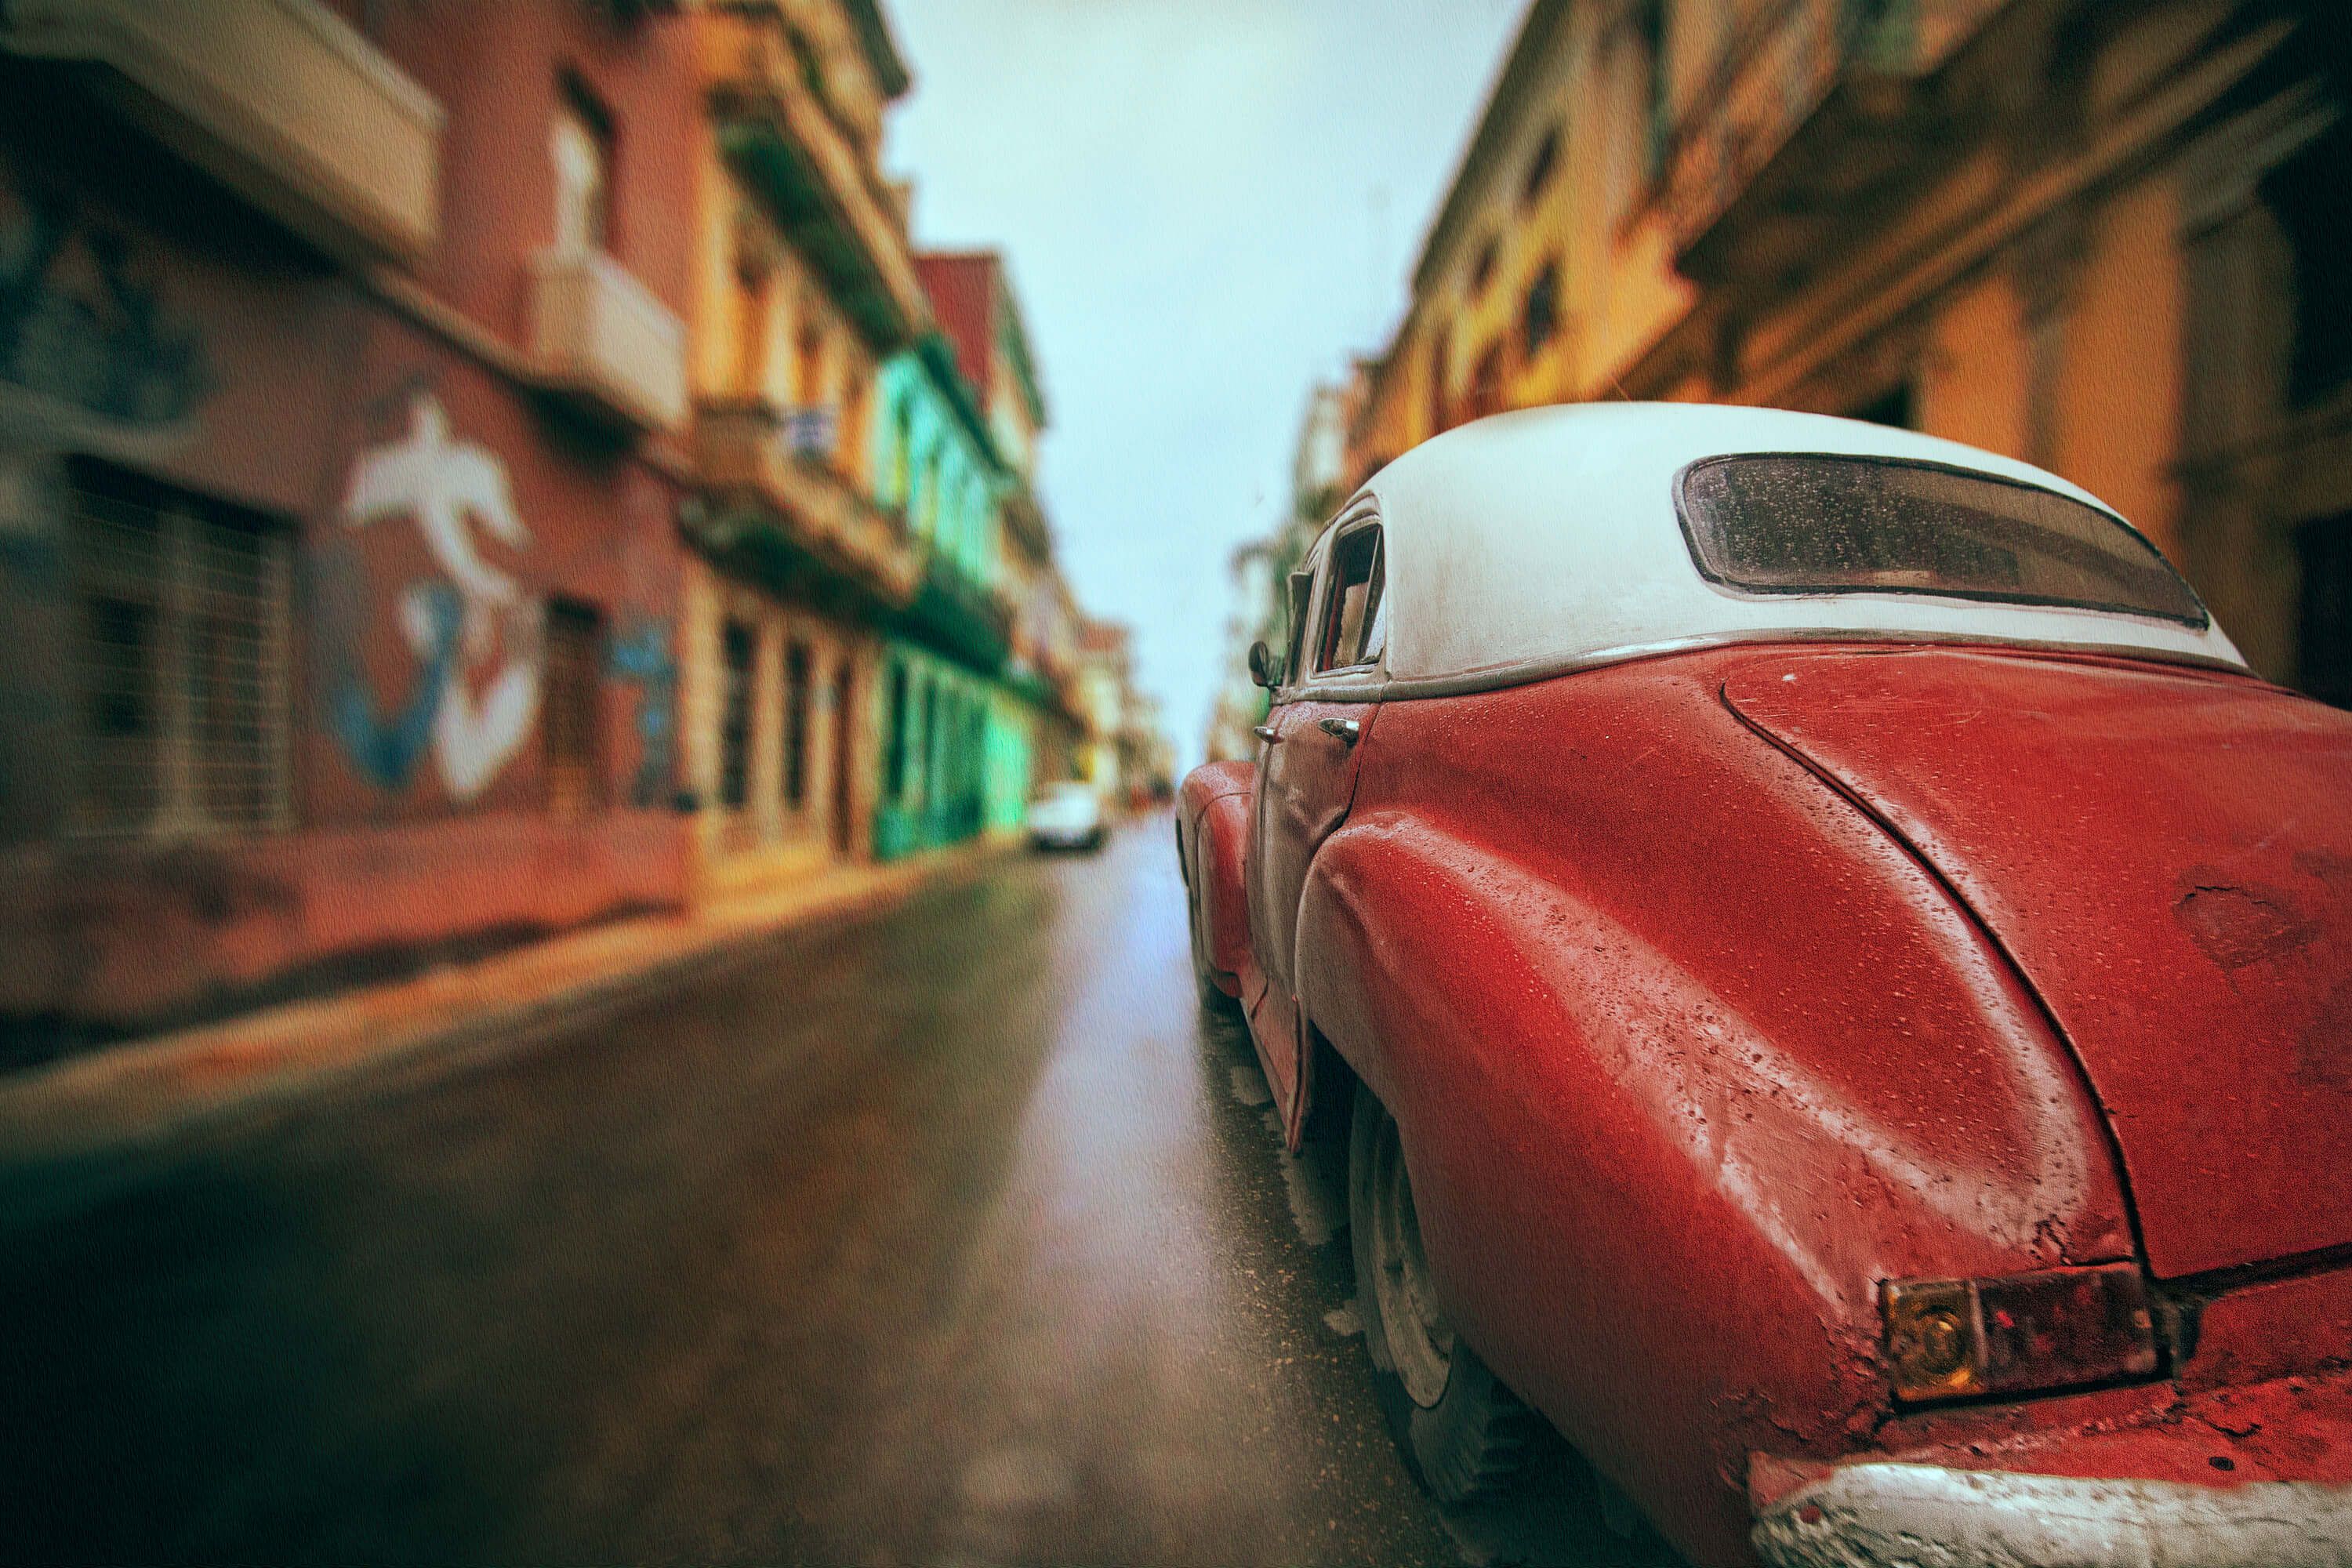  Cuba Street Car